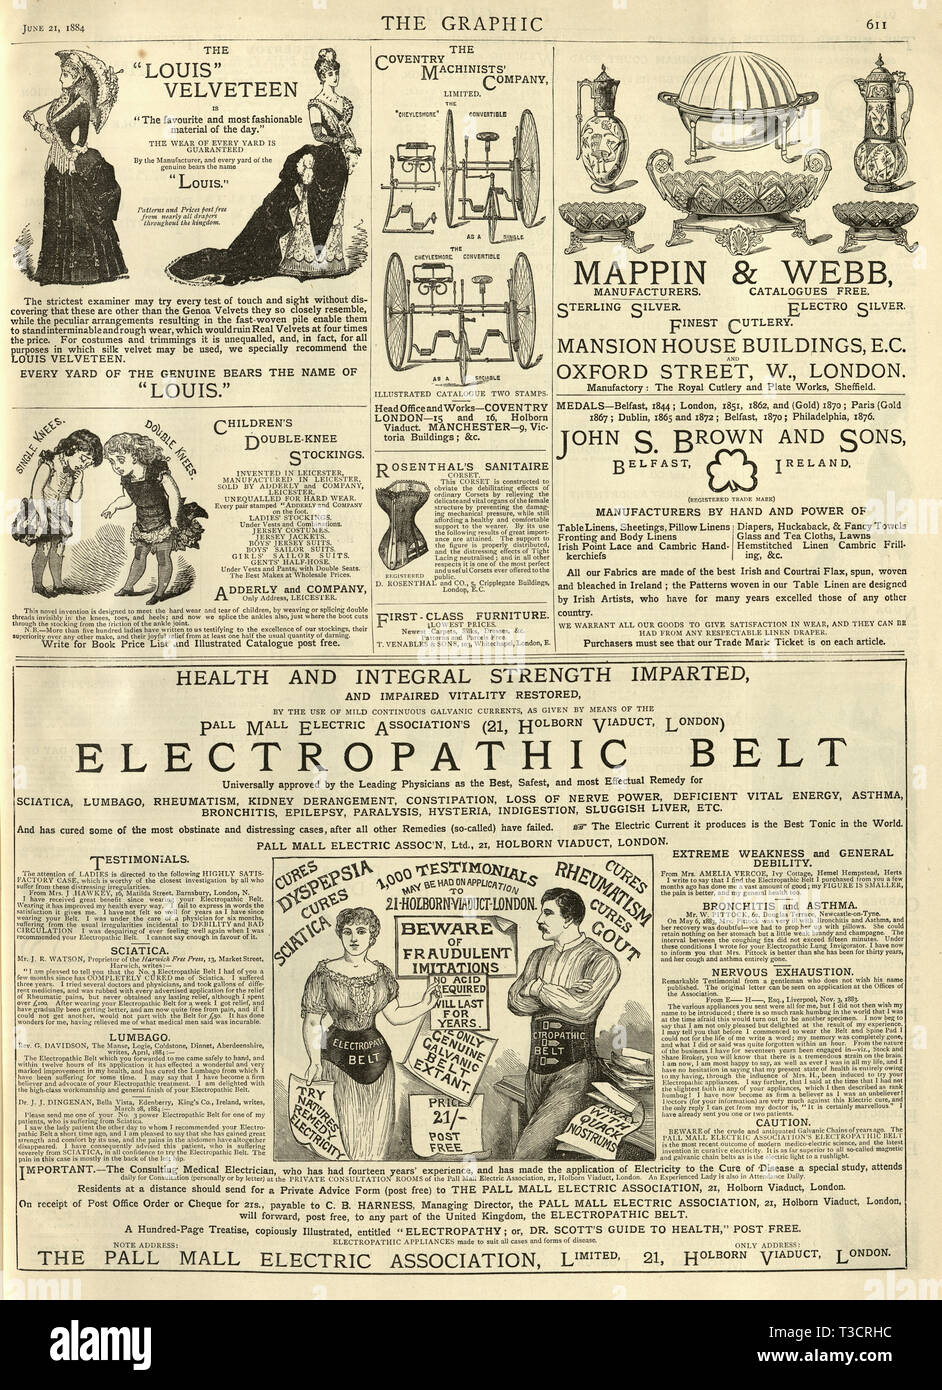 Pagina di inserzioni vittoriano dal grafico illustrato giornale, 1884, XIX secolo. Cinghia Electropathic Foto Stock